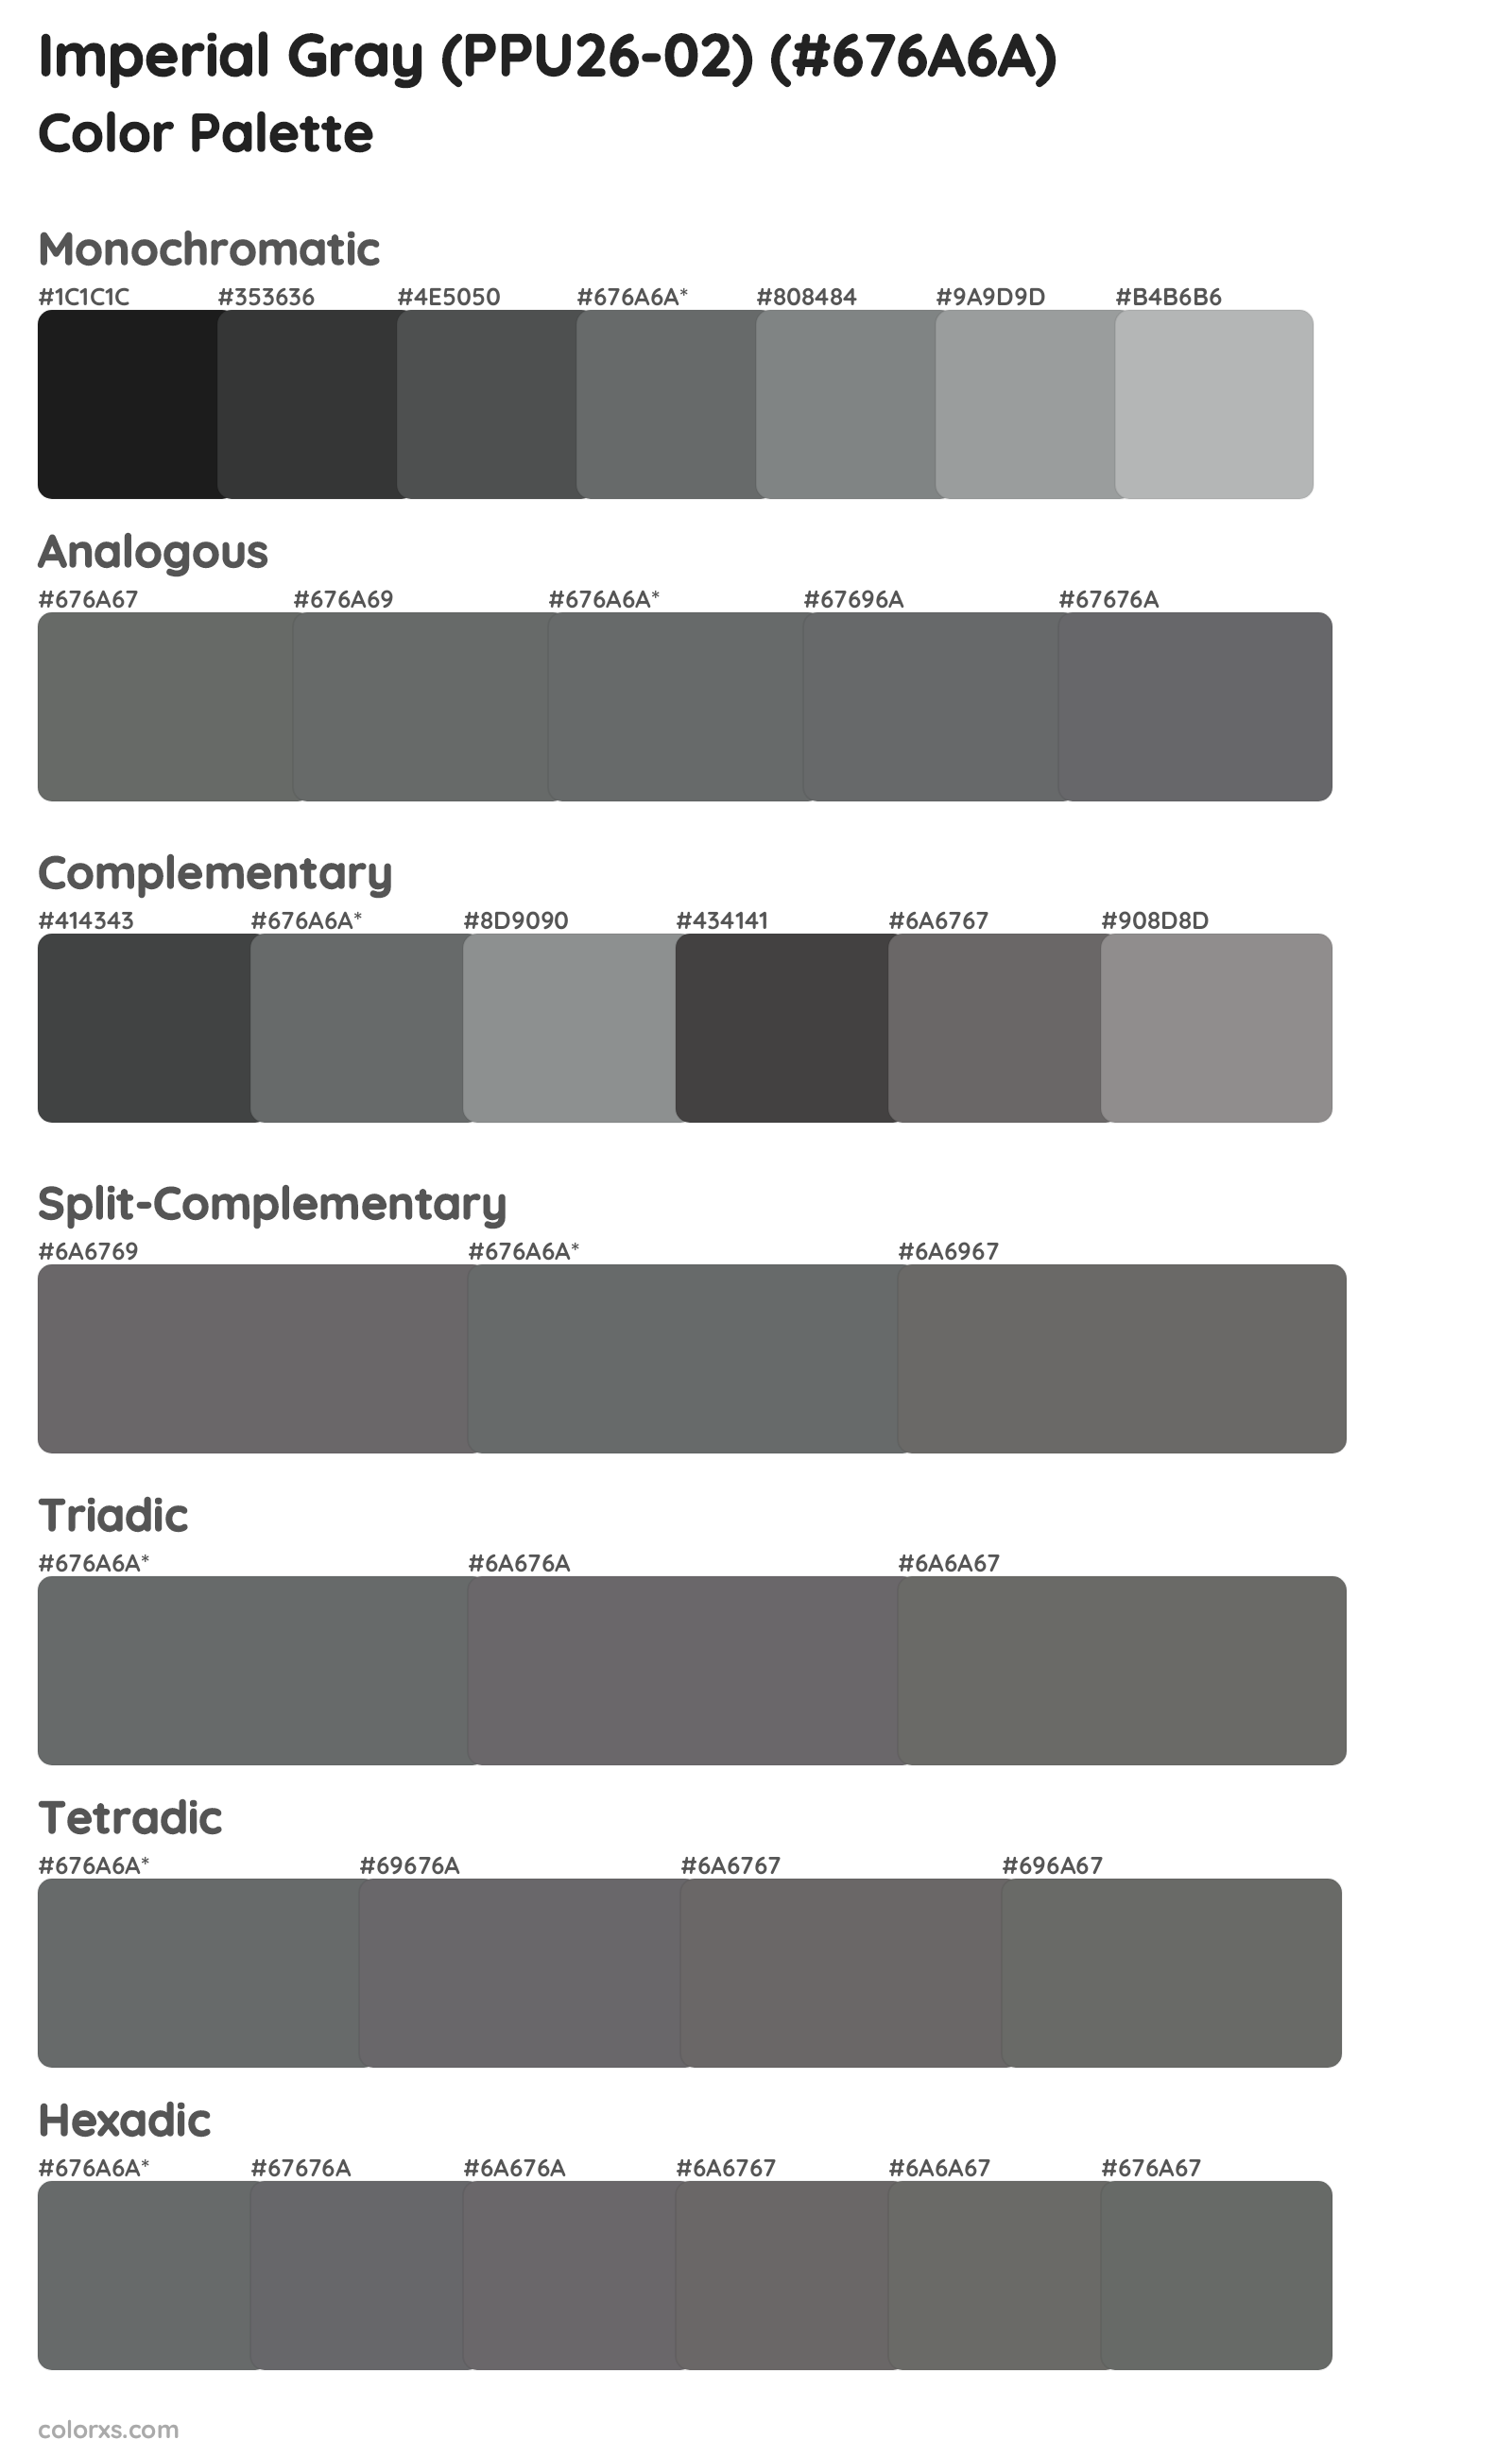 Imperial Gray (PPU26-02) Color Scheme Palettes